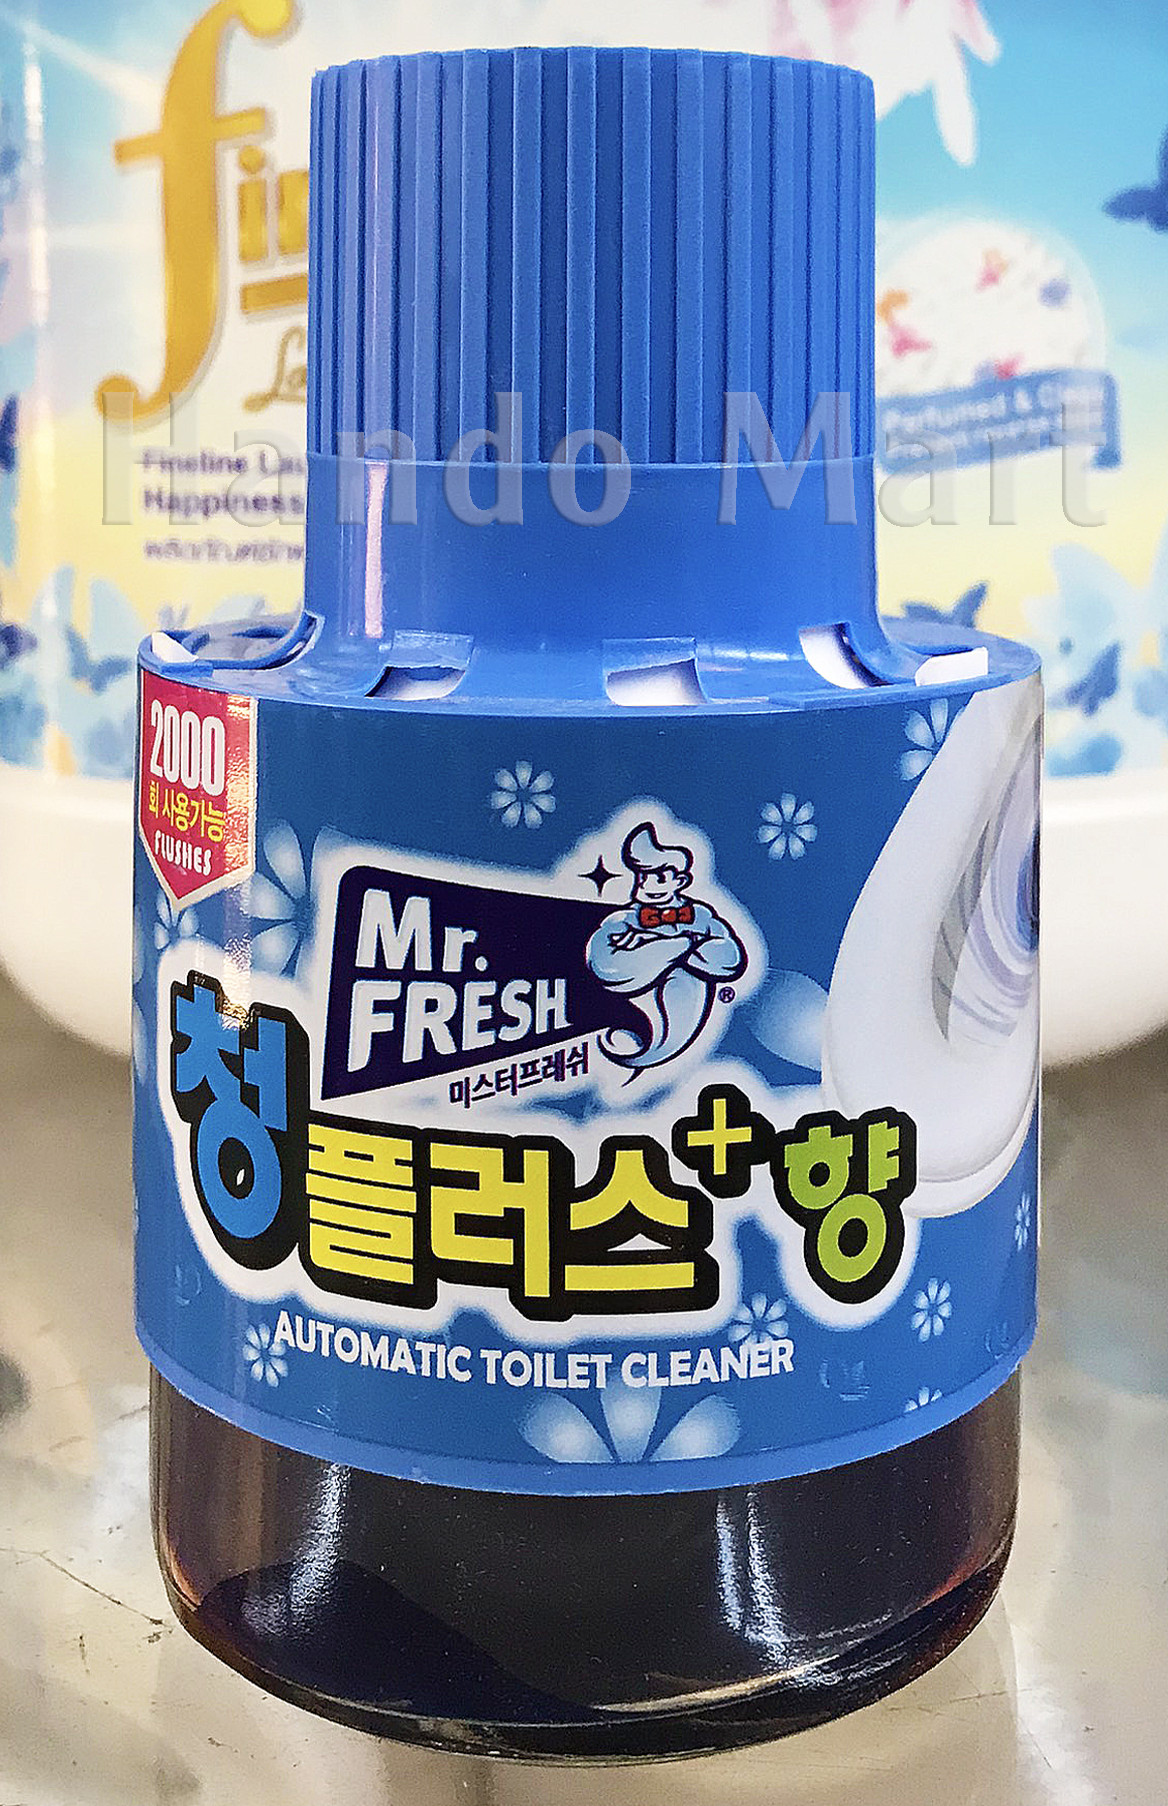 Cốc thả bồn cầu tẩy xanh toilet Mr Fresh - Hàn Quốc 180g hương Ngàn hoa